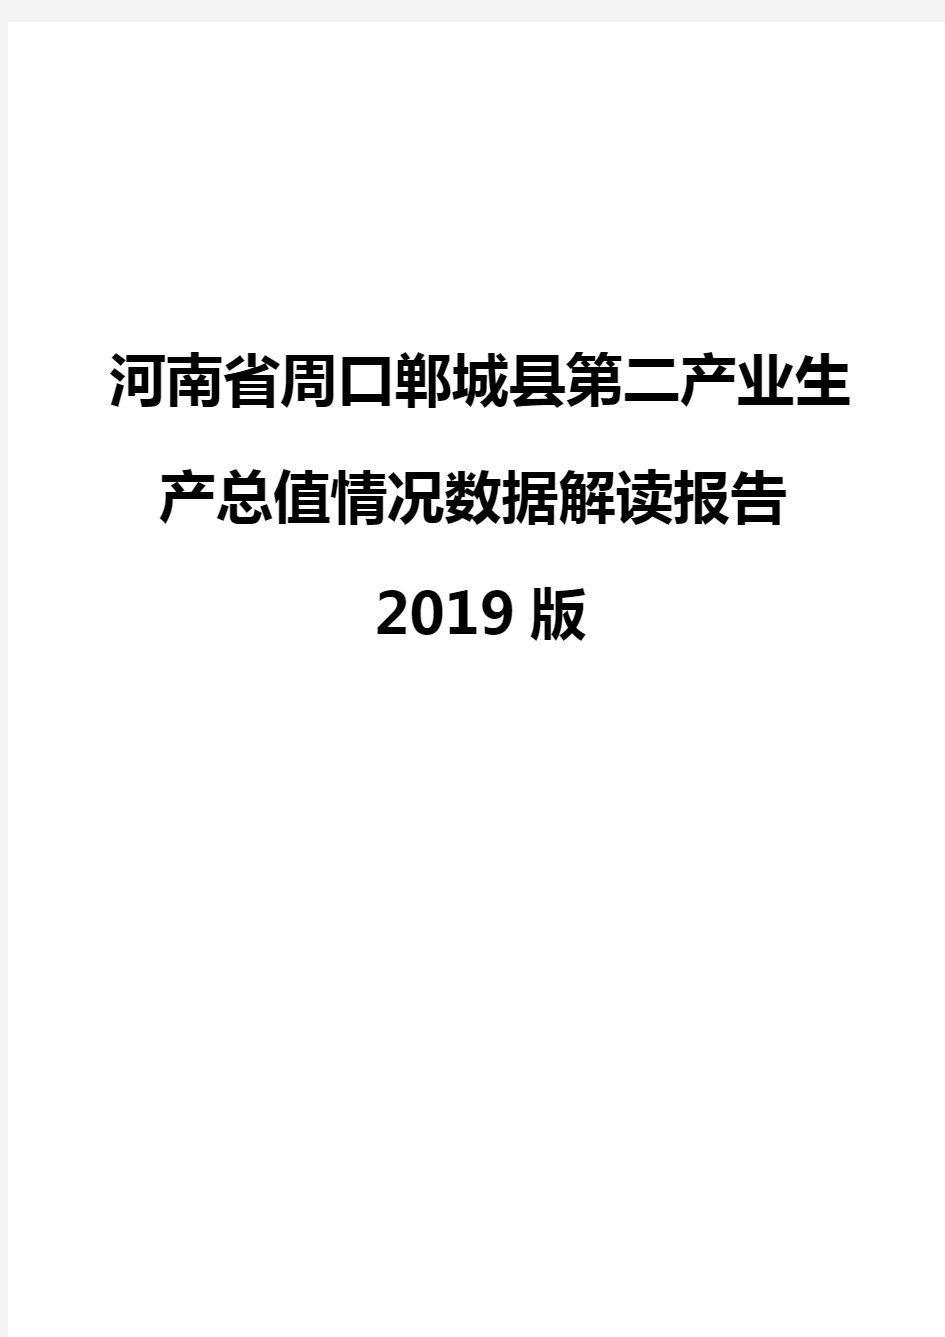 河南省周口郸城县第二产业生产总值情况数据解读报告2019版